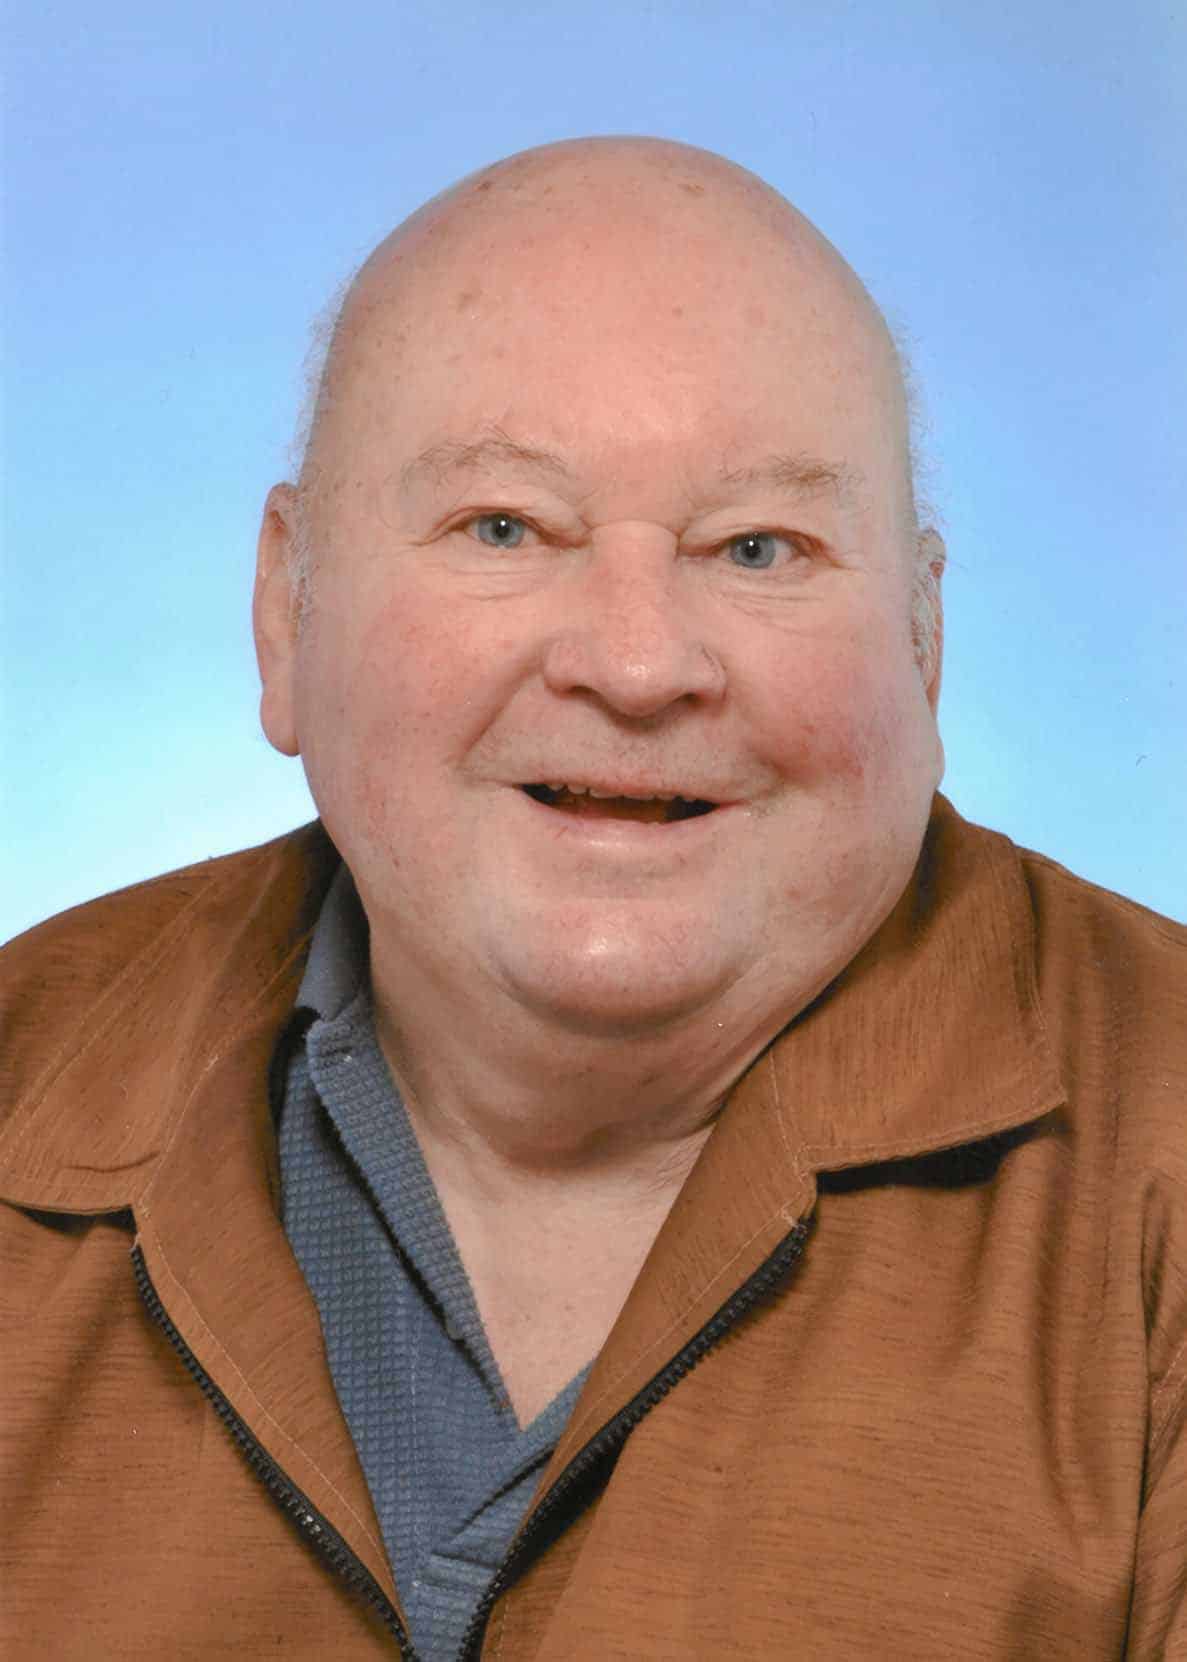 Kurt Nagl (85)